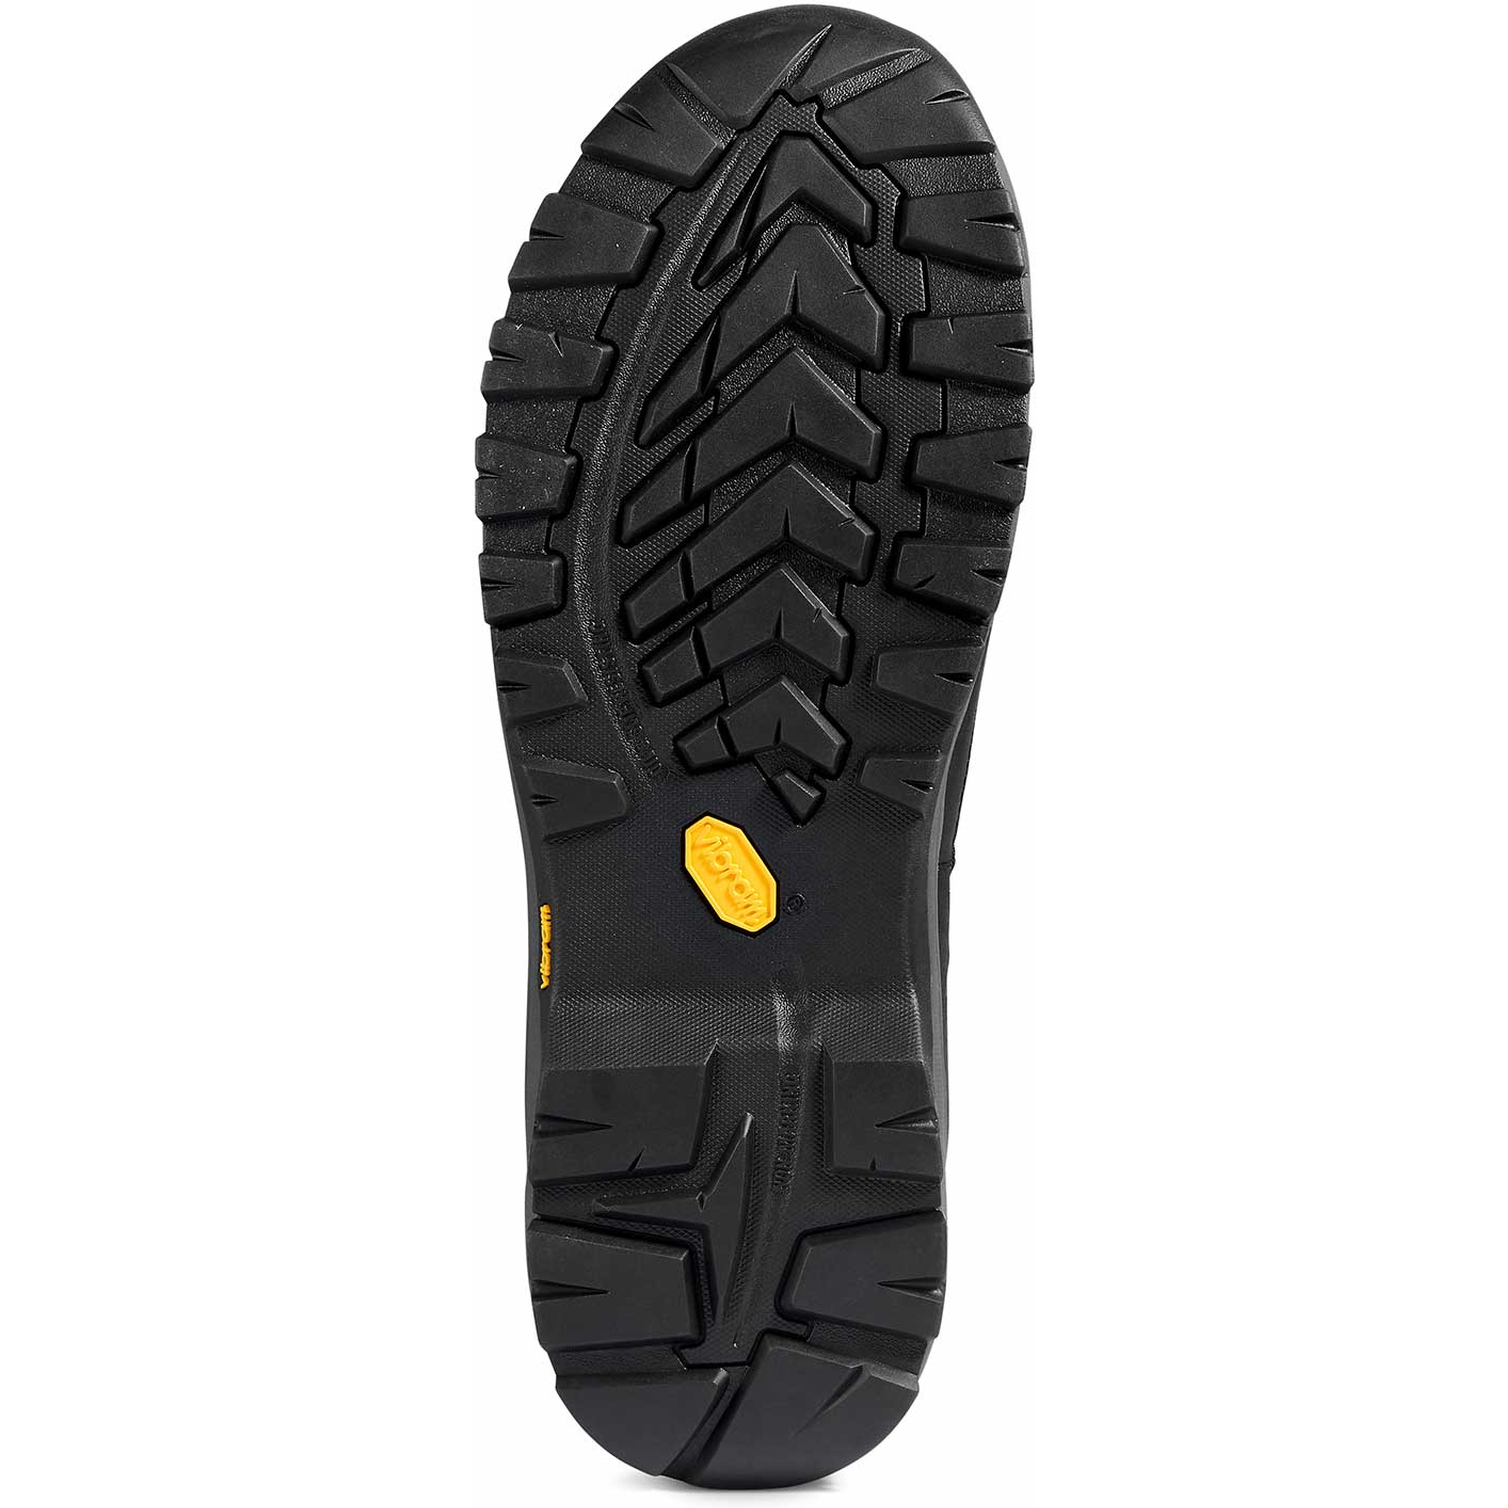 Kodiak Men's Quest Bound Comp Toe WP Hiker Work Boot -Black- 4TELBK  - Overlook Boots